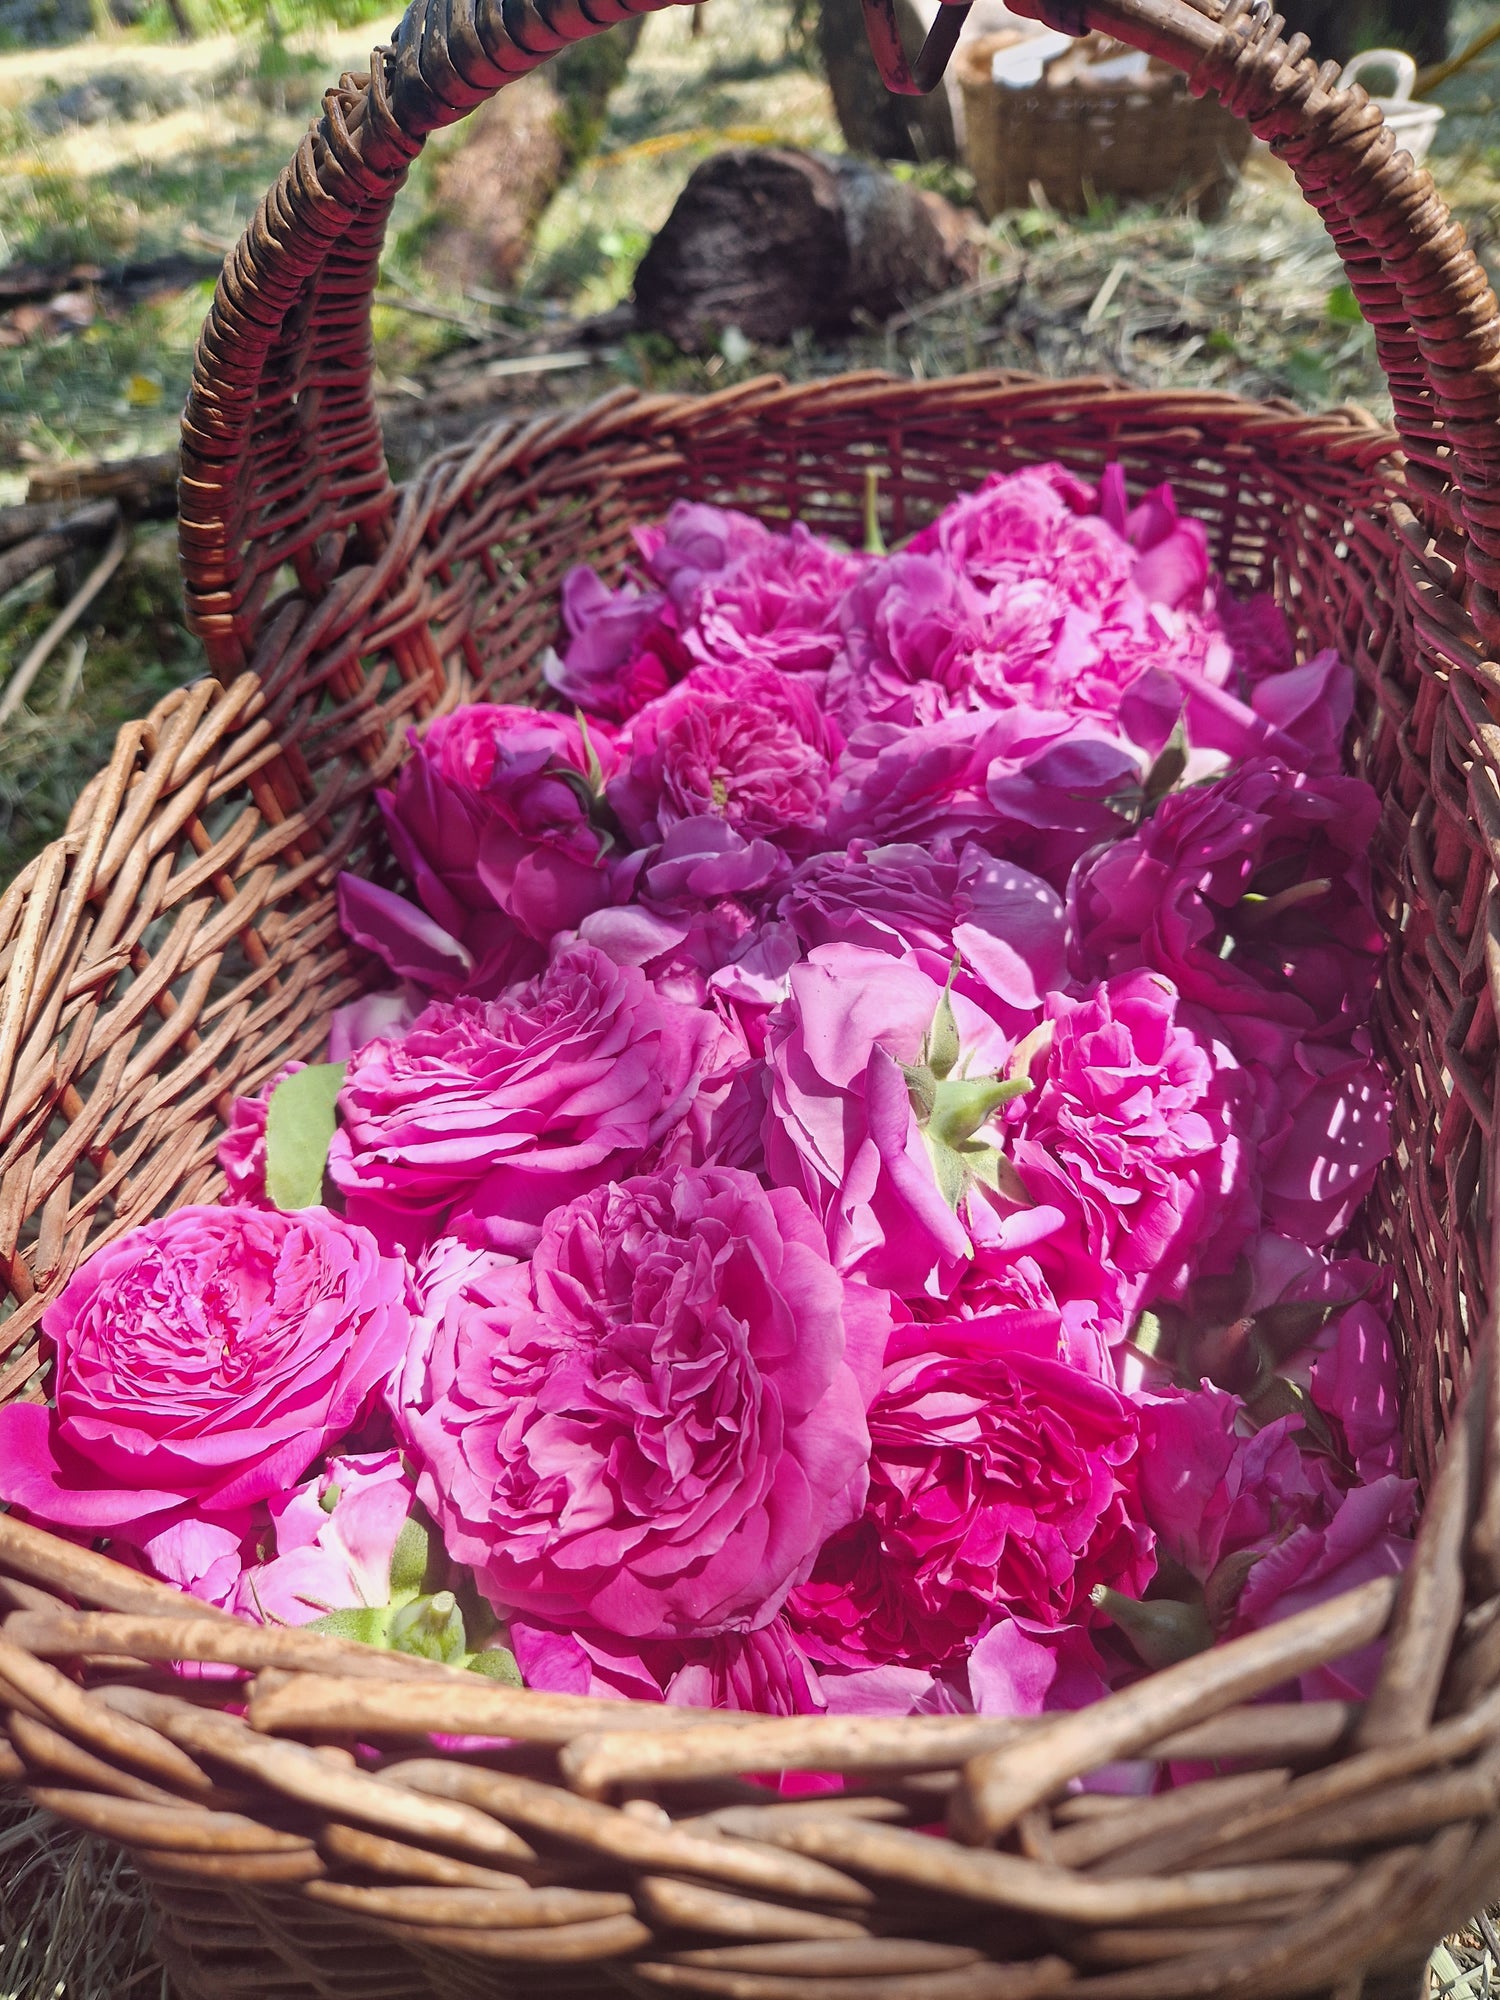 Les secrets du parfum de rose : Découvrez les techniques de distillation et d'extraction utilisées pour obtenir l'essence de rose, ainsi que les variétés de roses les plus prisées en parfumerie.